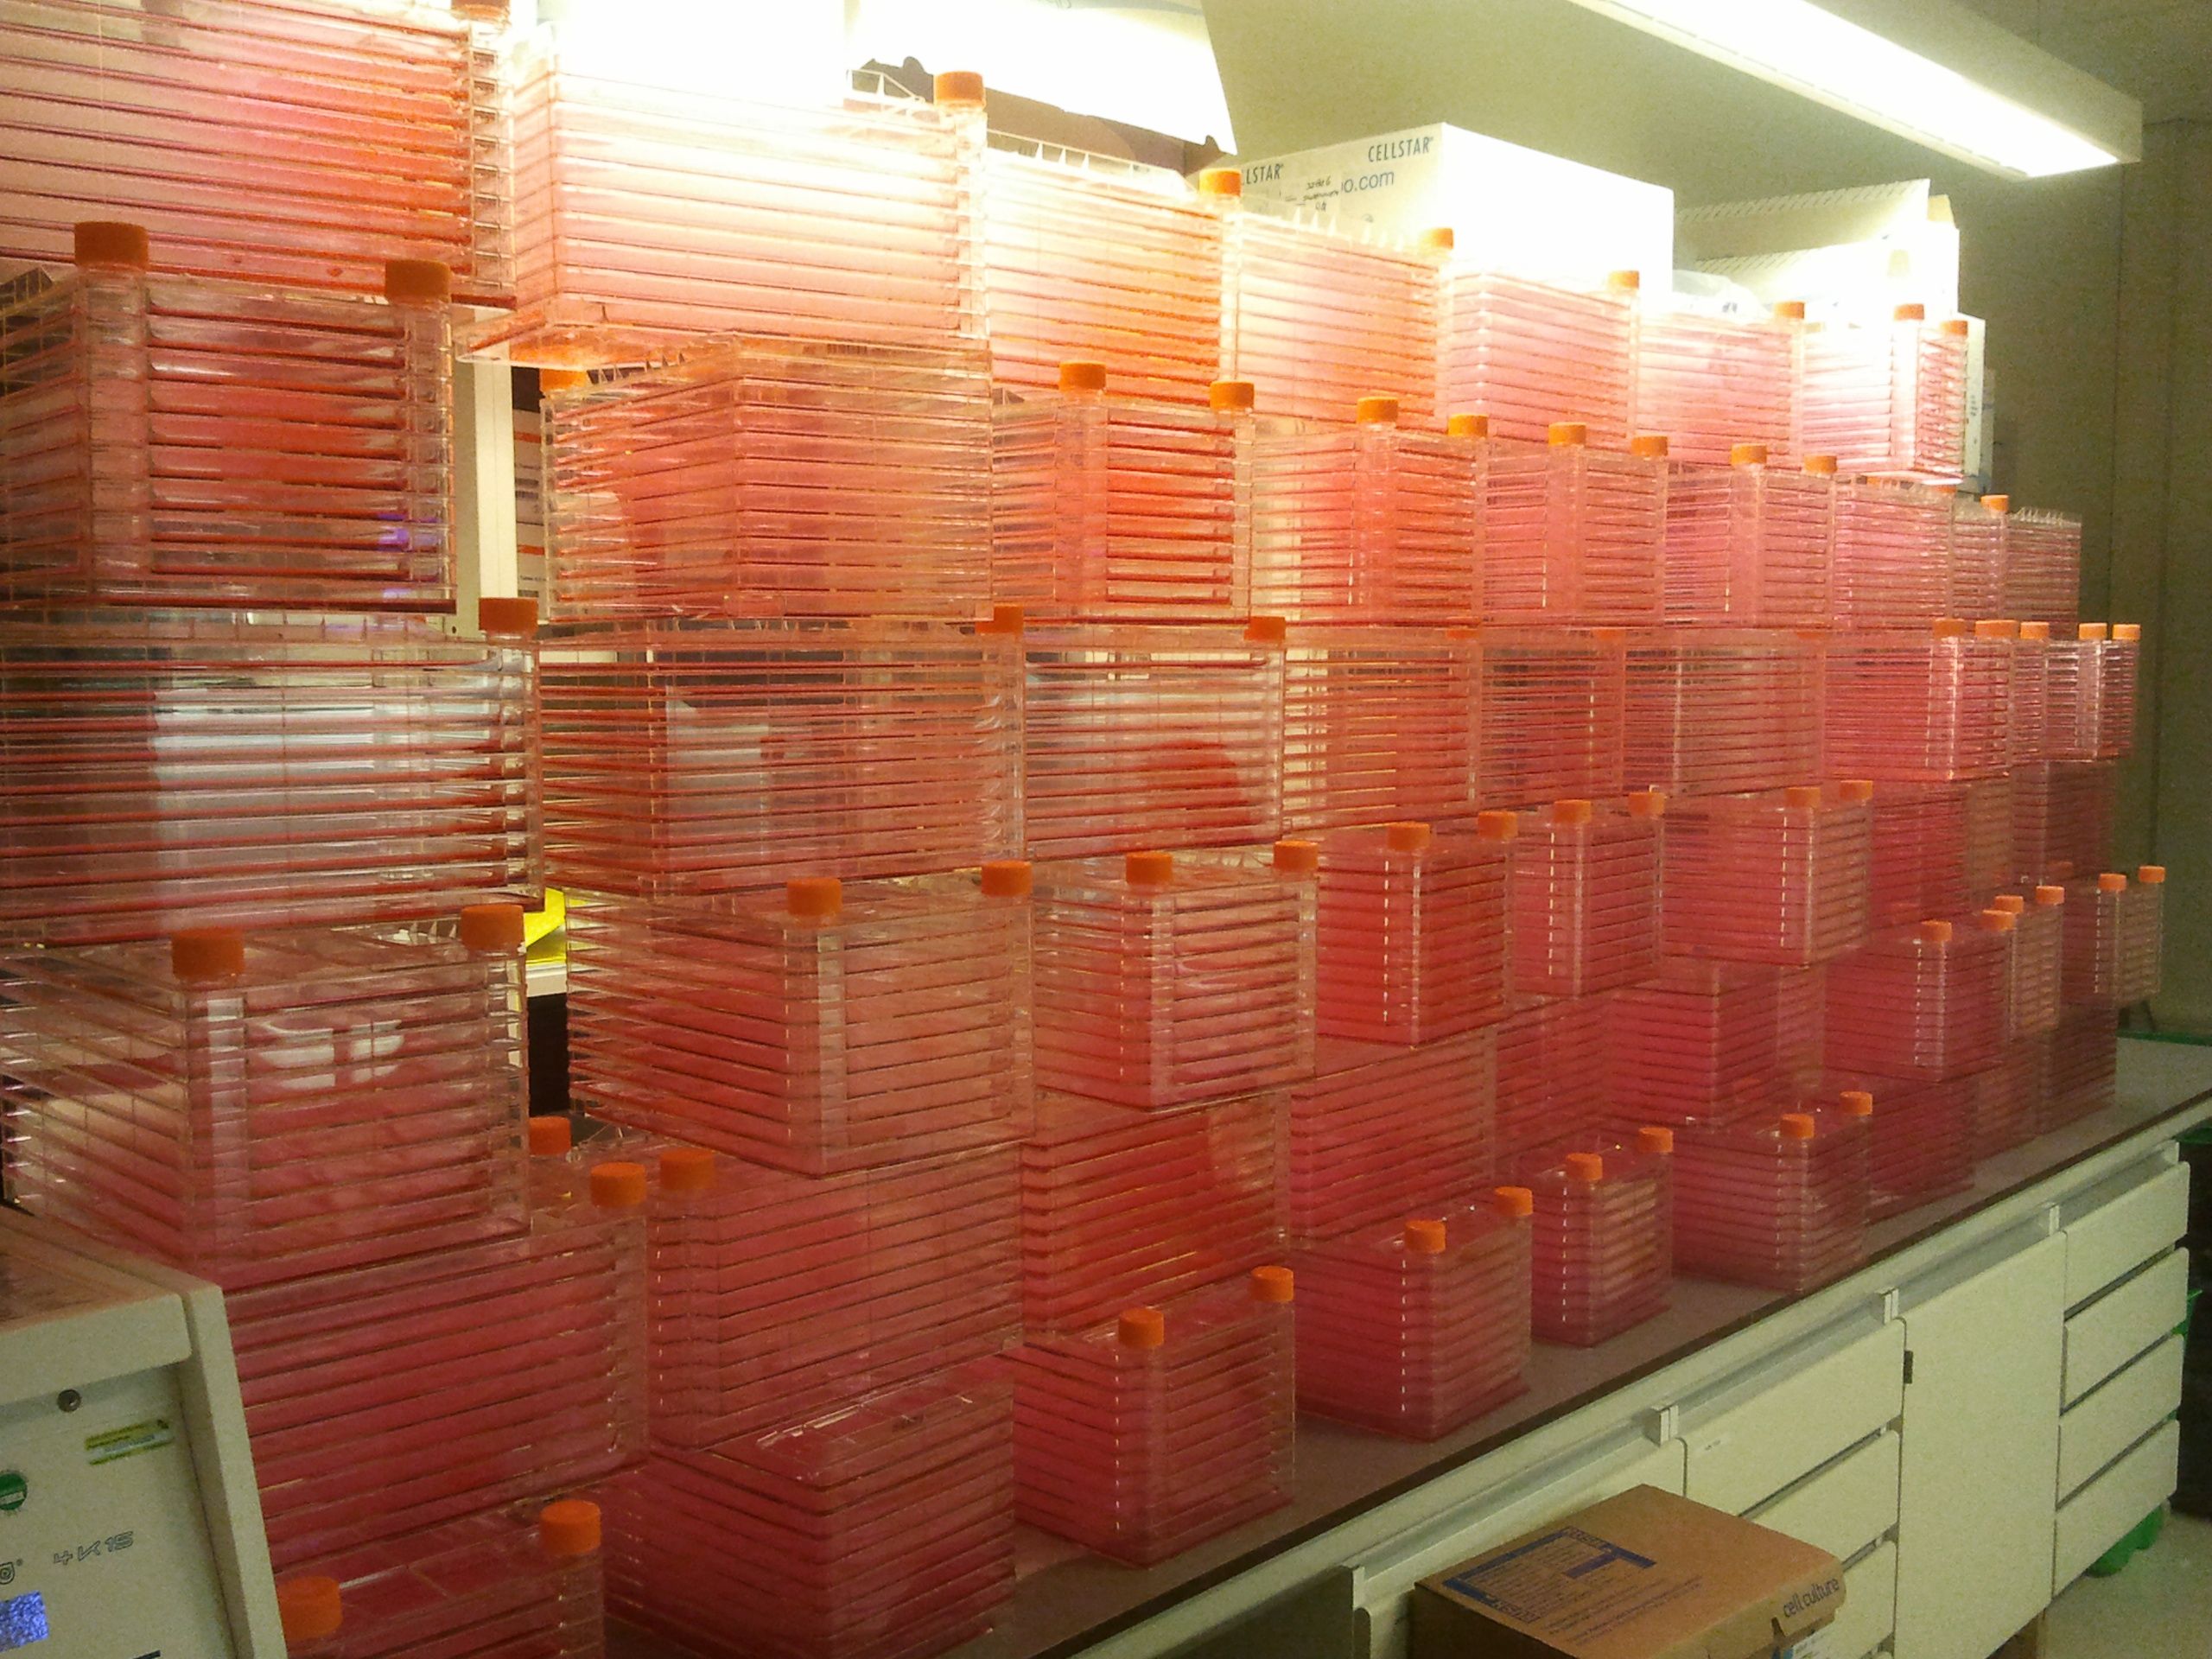 Huge stacks of flasks piled inn a lab